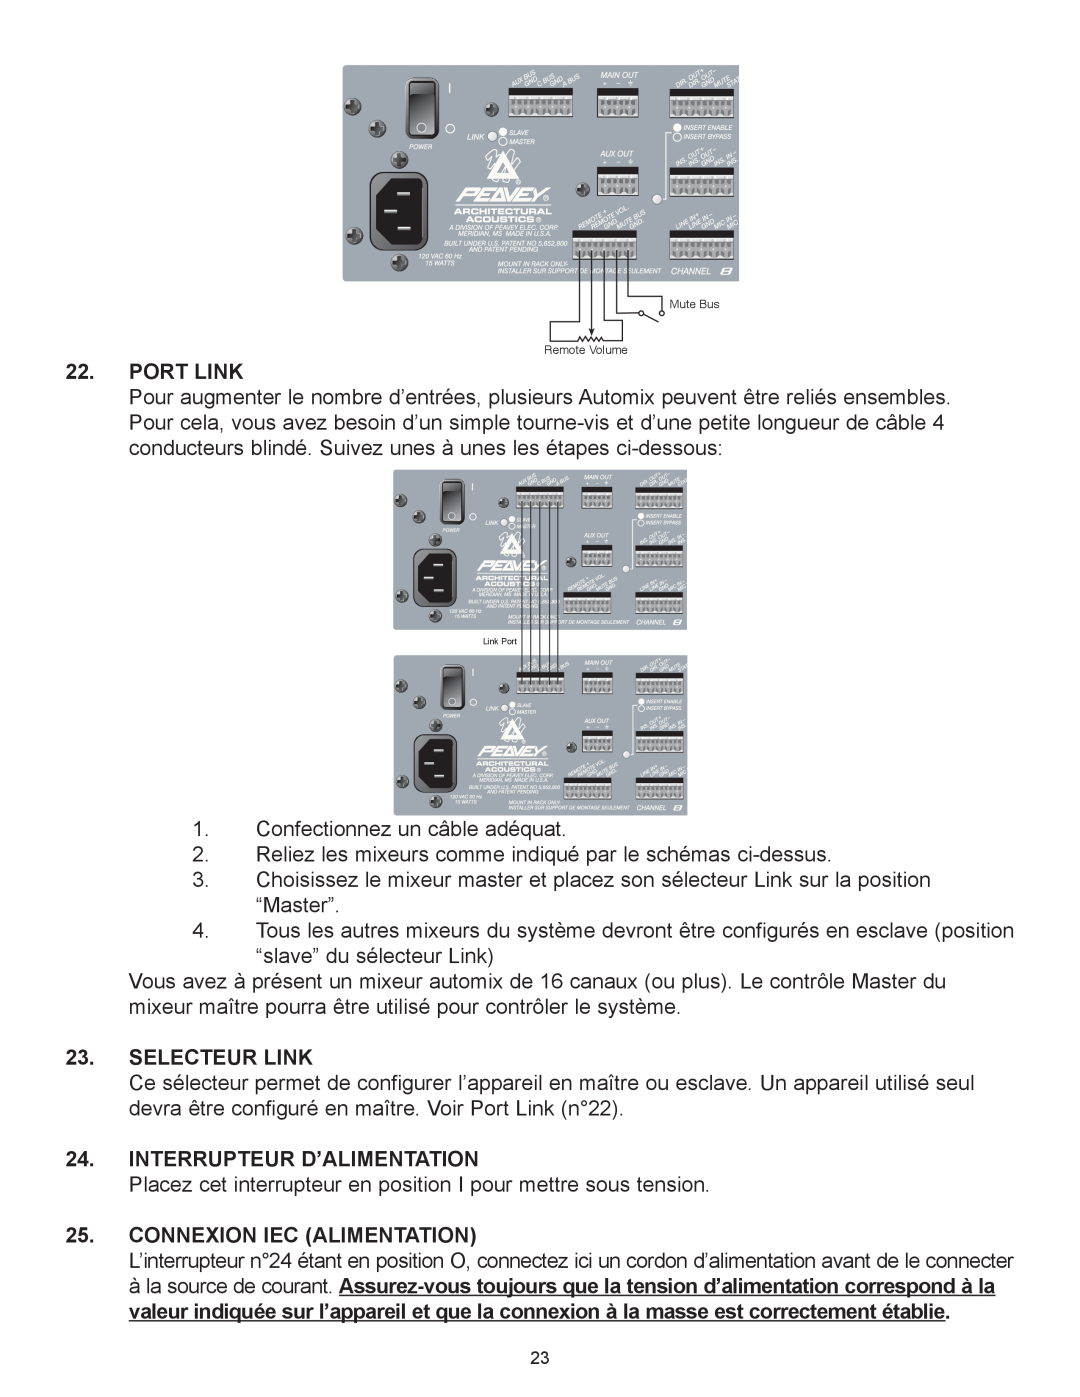 Peavey Automix2 manual Port Link, Selecteur Link, Interrupteur Dõalimentation, Connexion Iec Alimentation 